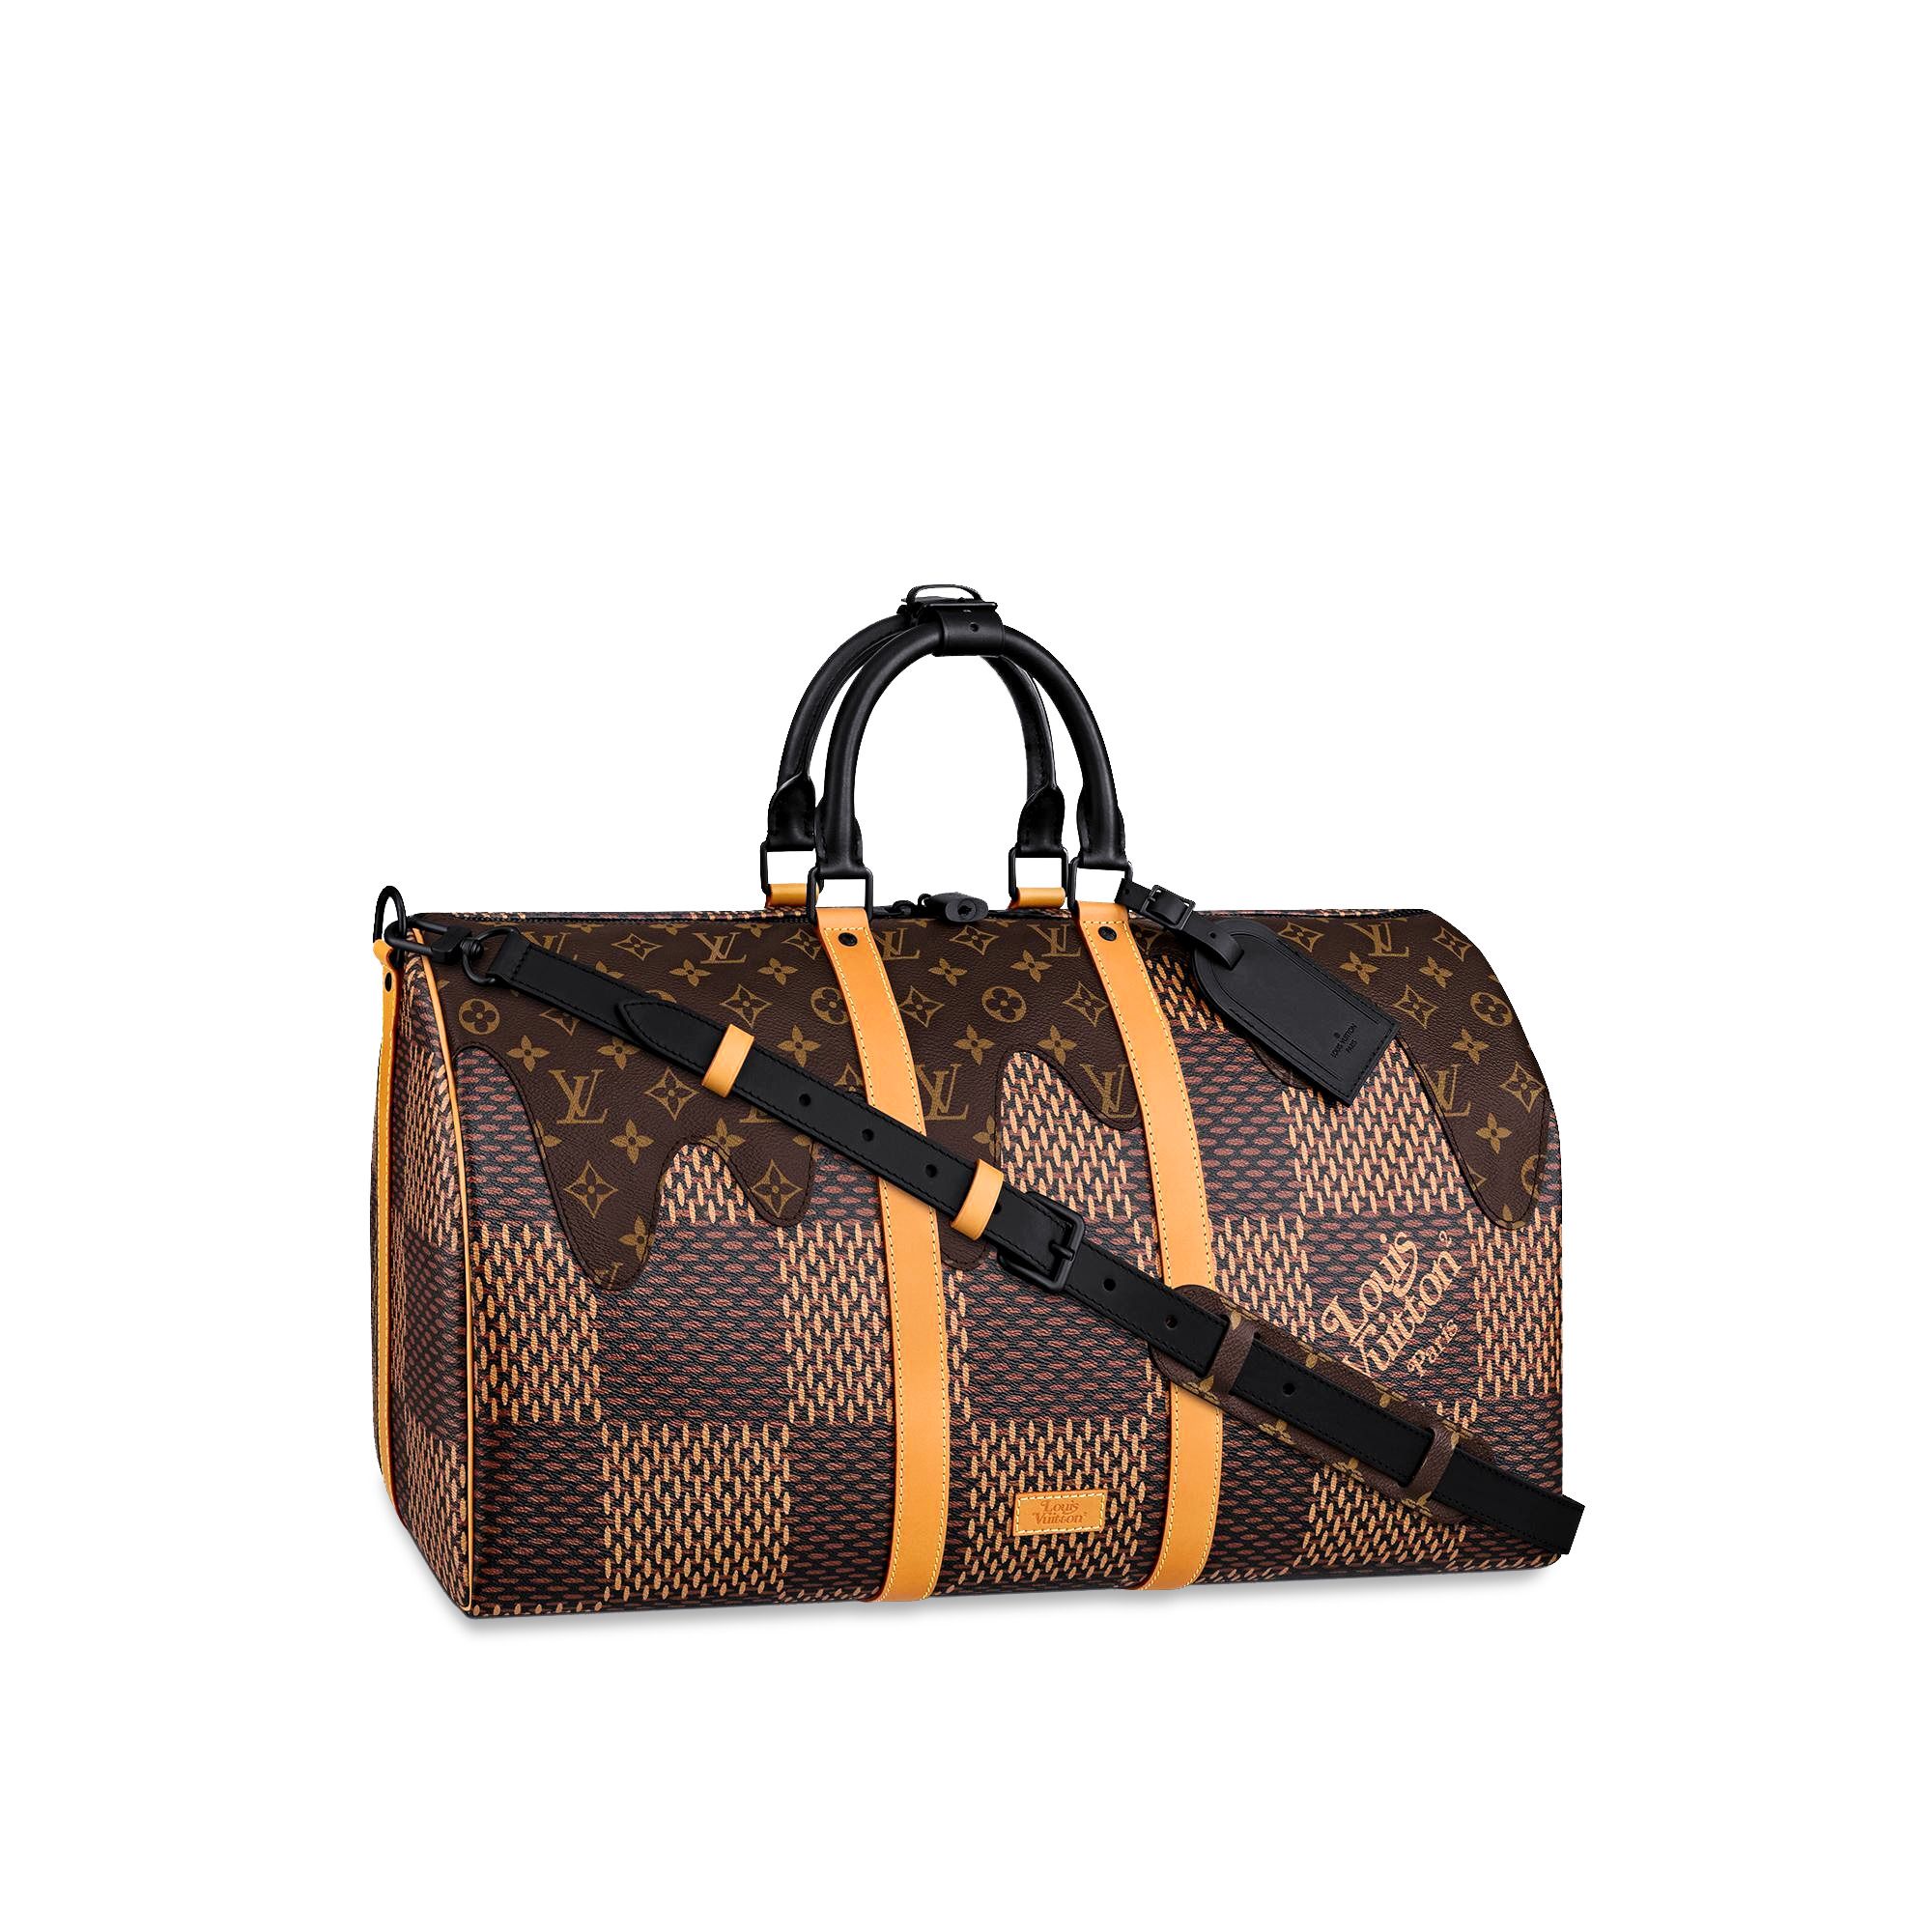 Virgil Abloh Shares a Closer Look at a Men's Louis Vuitton Signature Bag –  PAUSE Online